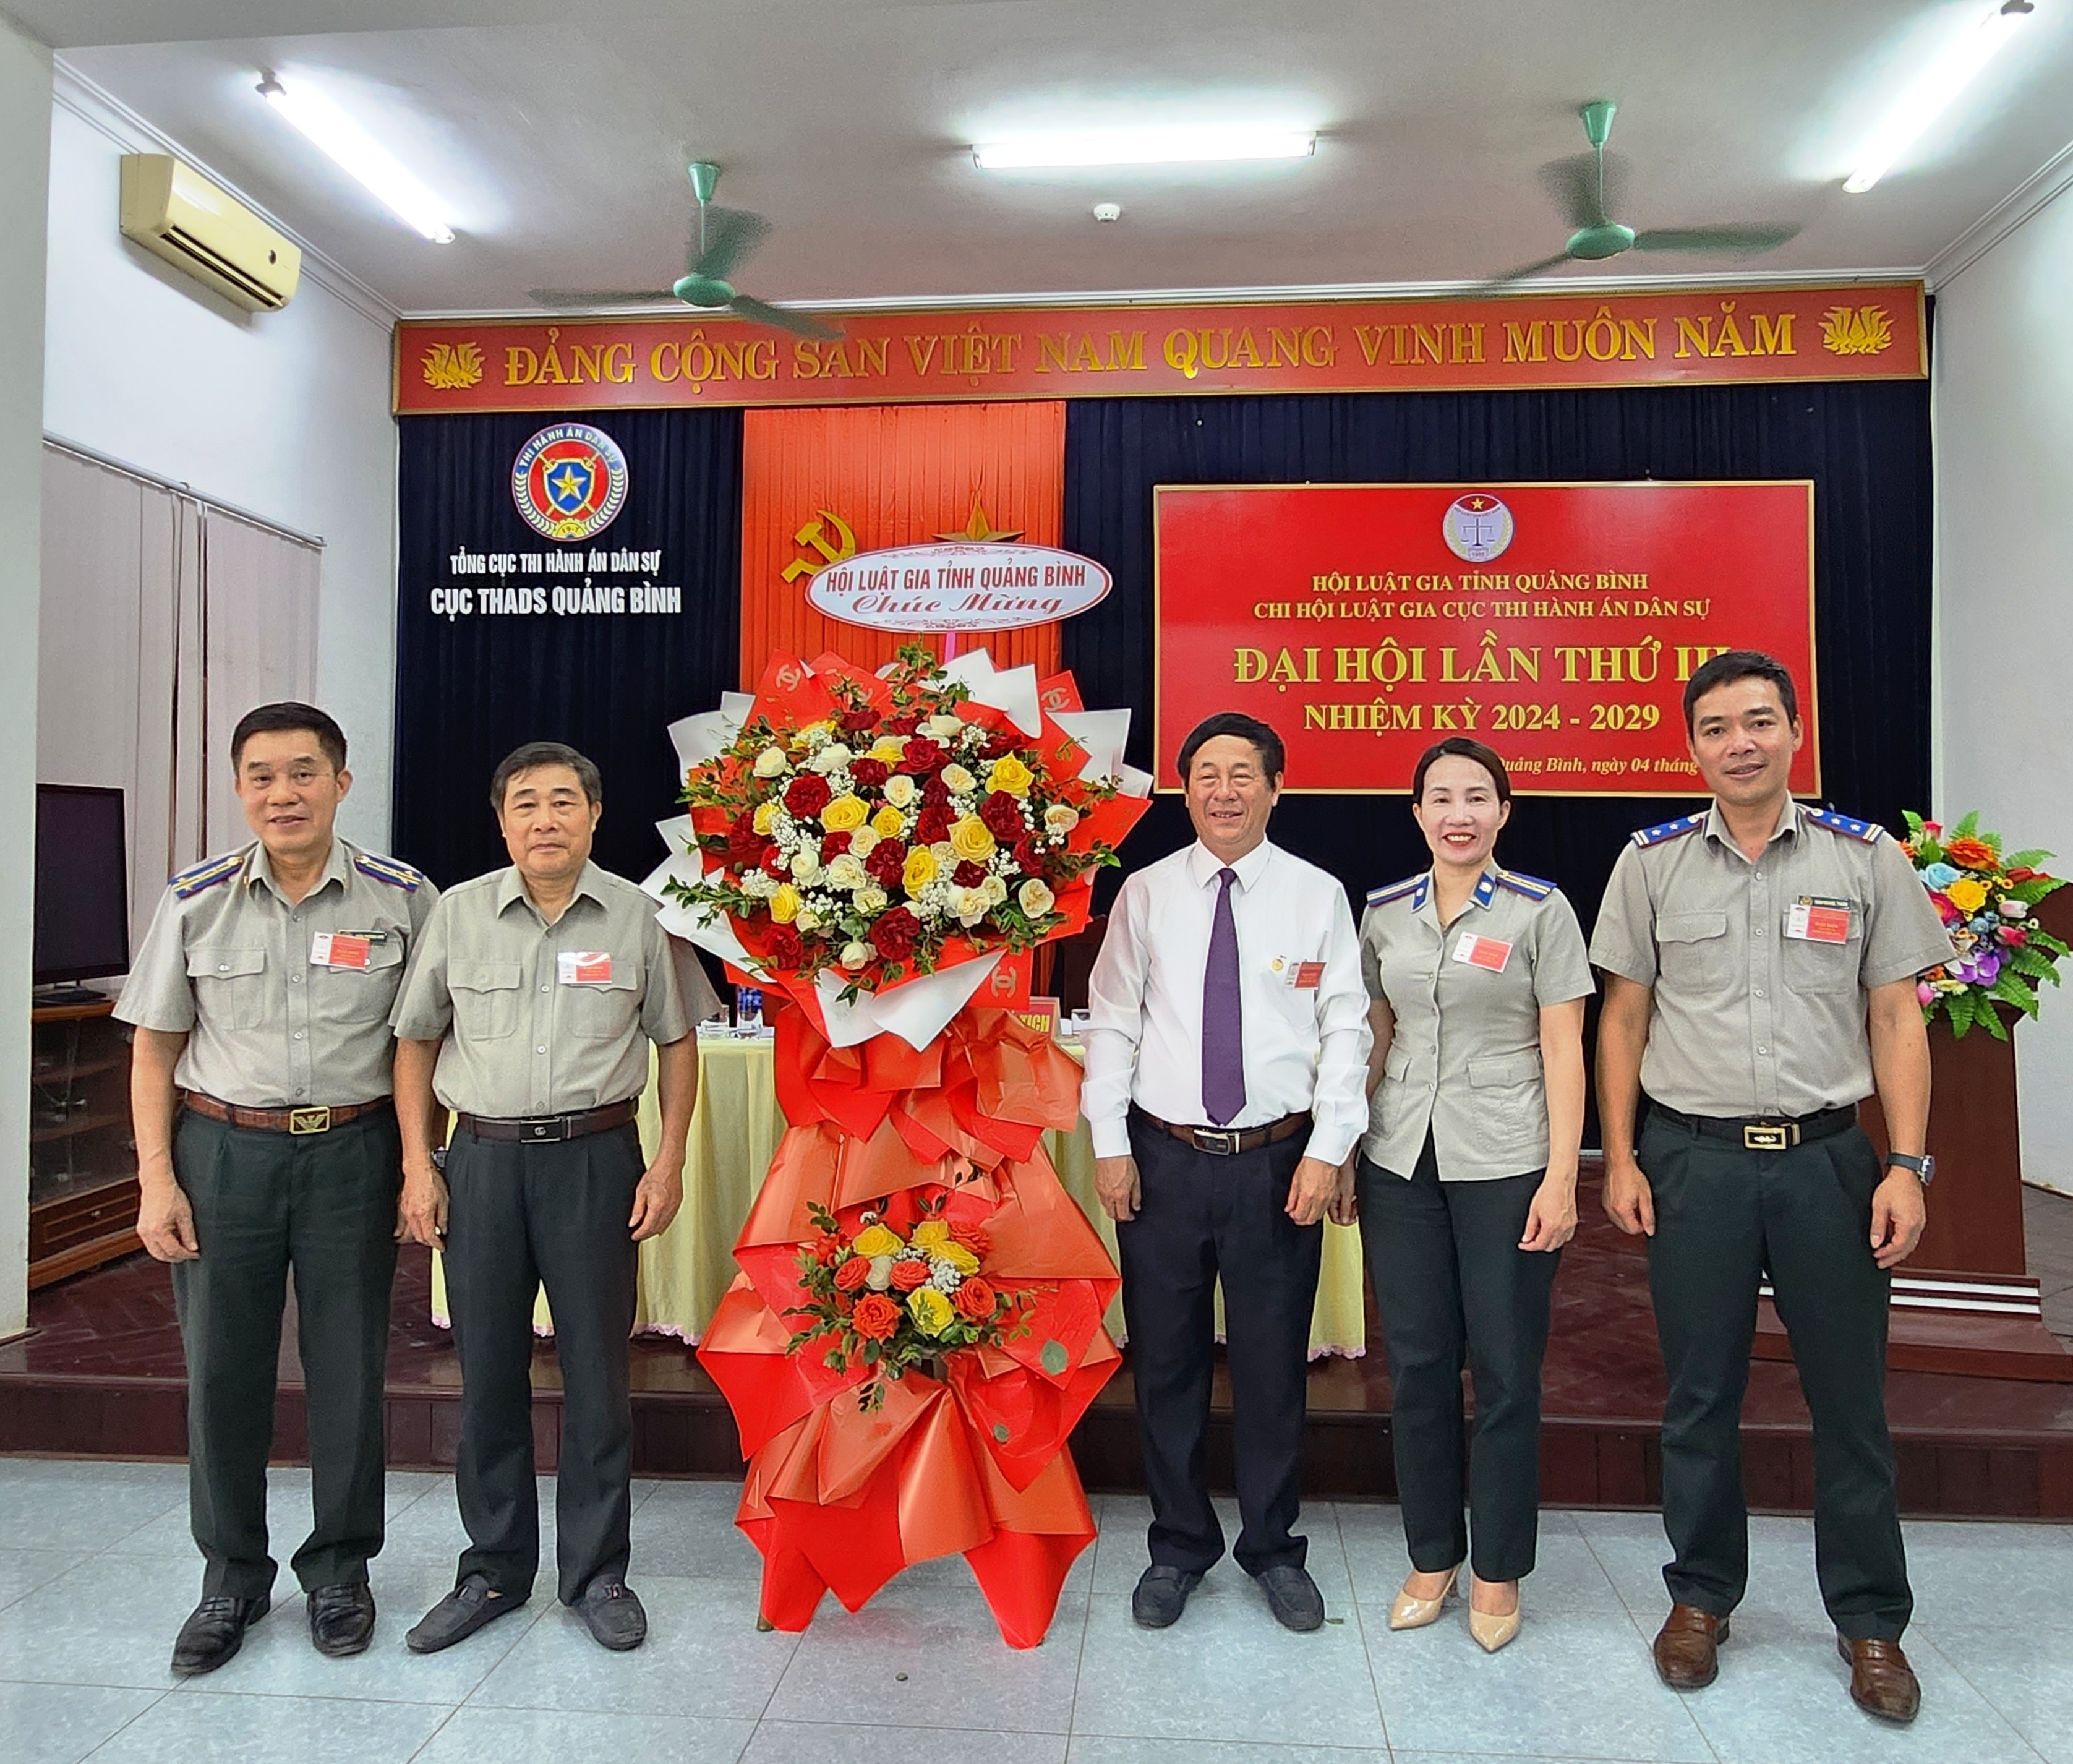 Sự kiện - Chi hội Luật gia Cục THADS và Thanh tra tỉnh Quảng Bình Đại hội nhiệm kỳ 2024 - 2029